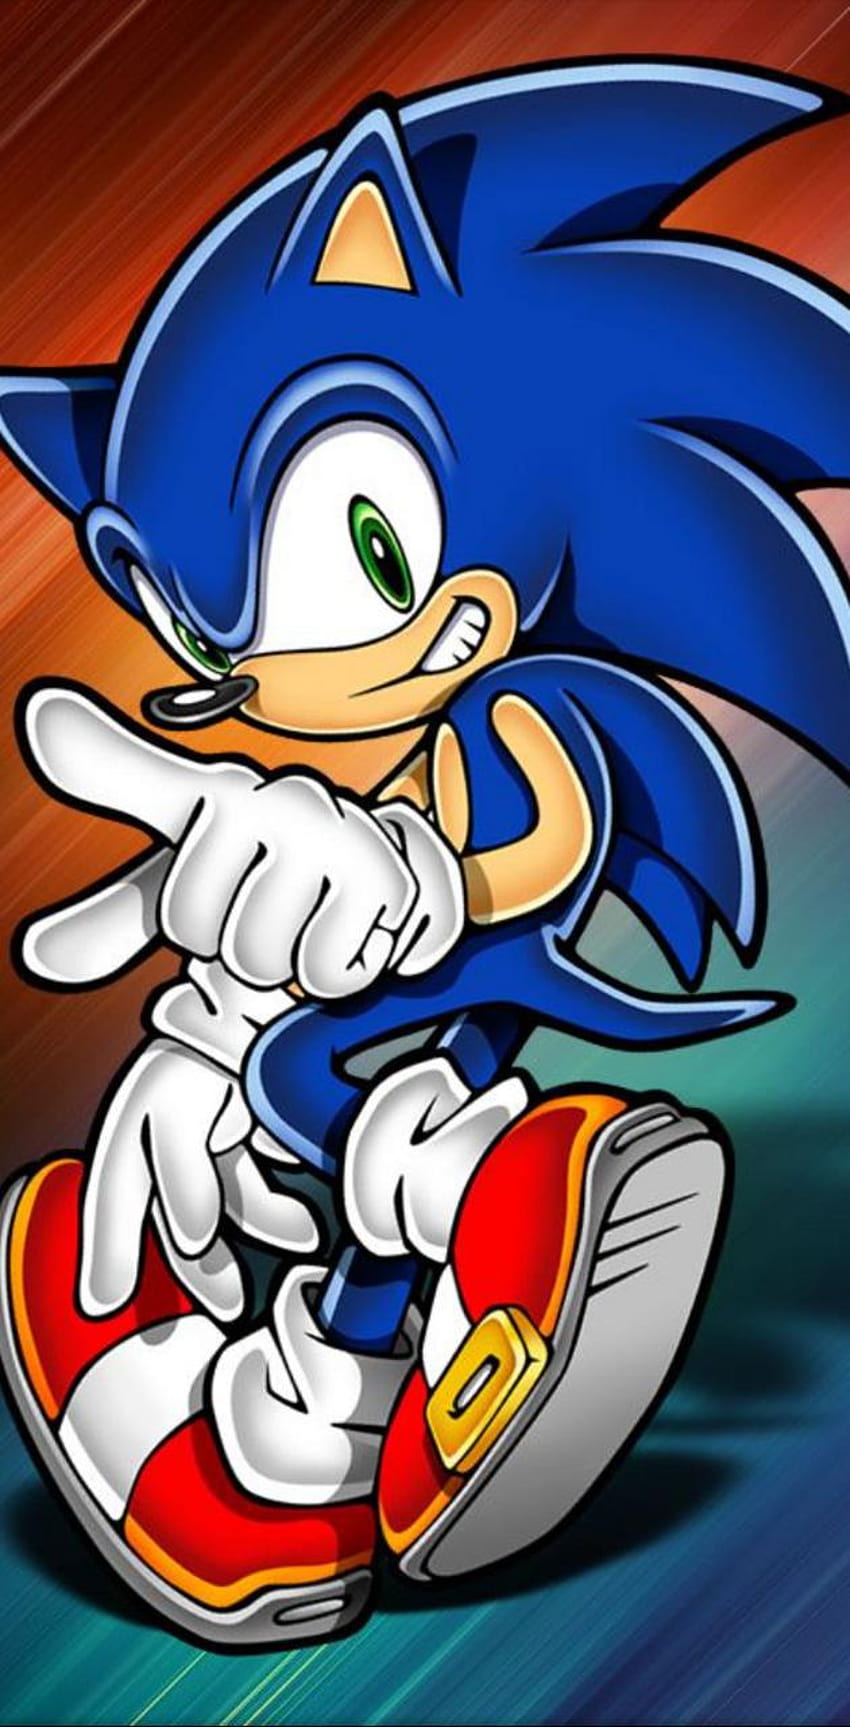 Sonic the Hedgehog von Sonite907, Sonic Hedgedog iPhone HD-Handy-Hintergrundbild